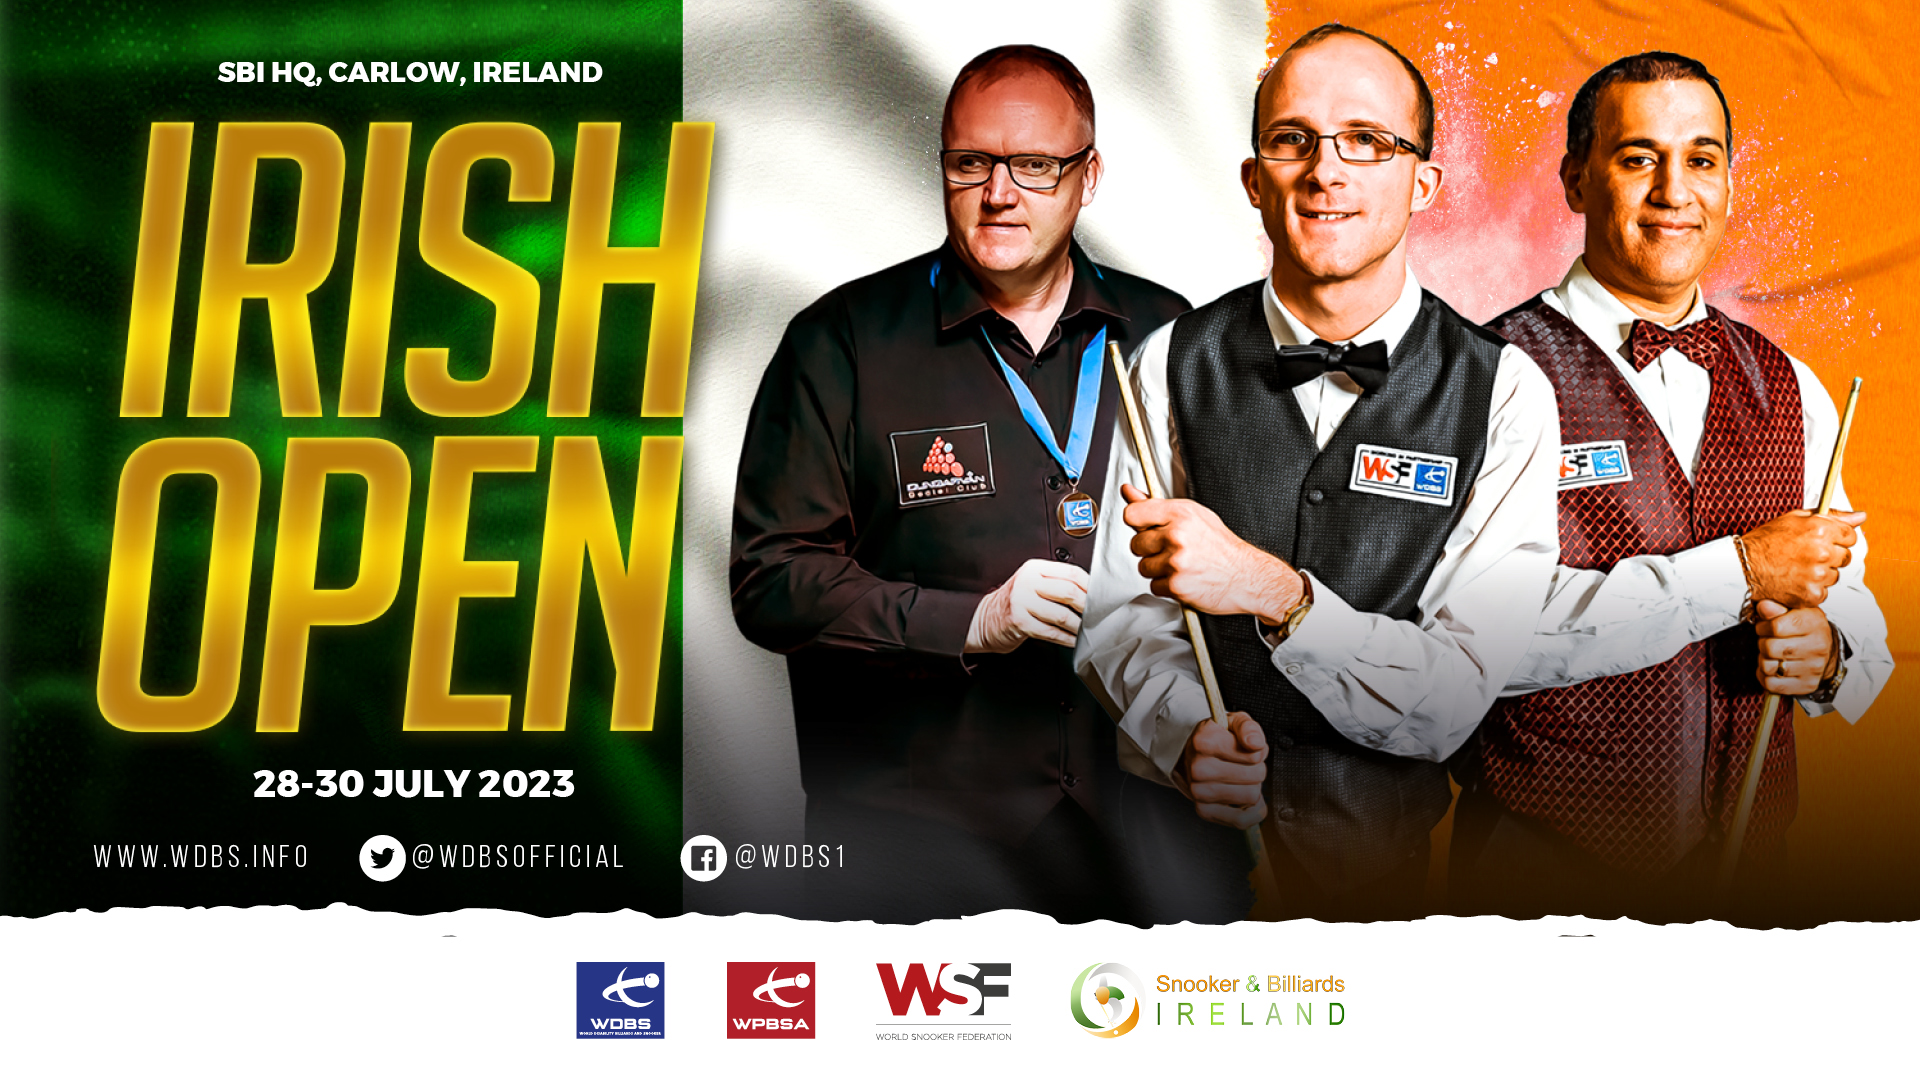 Irish Open poster